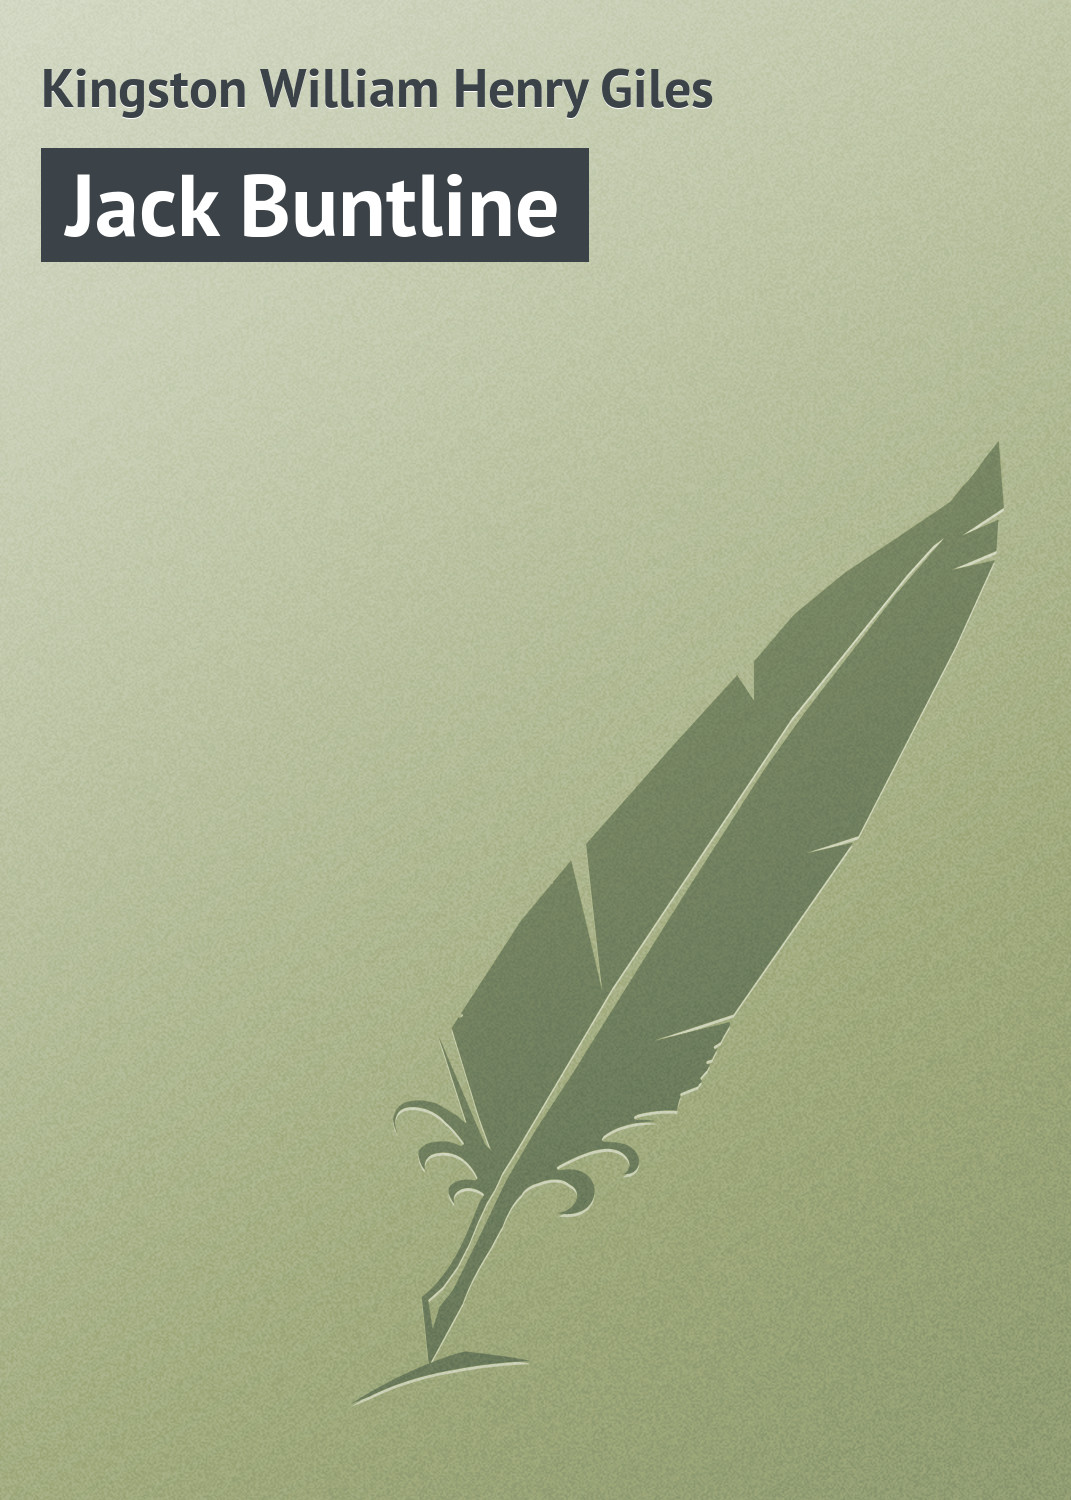 Книга Jack Buntline из серии , созданная William Kingston, может относится к жанру Зарубежная классика, Зарубежные детские книги. Стоимость электронной книги Jack Buntline с идентификатором 23166371 составляет 5.99 руб.